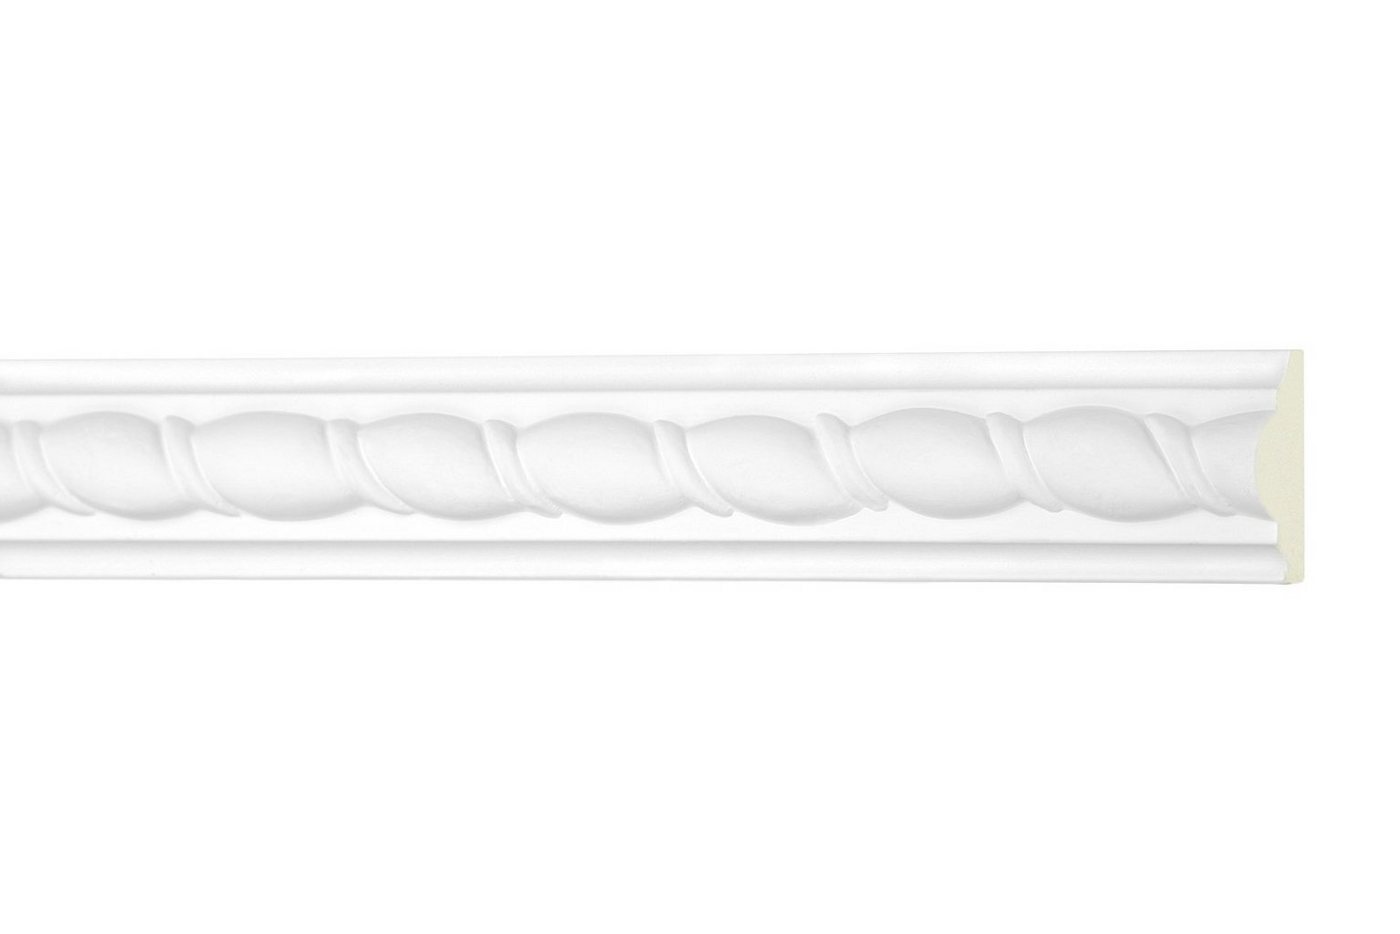 Hexim Perfect Stuckleiste AC 261, Flachprofile aus PU Serie 2 - Stuckprofil gemustert, weißes Zierprofil, hart & stoßfest - Wandleiste vorgrundiert von Hexim Perfect